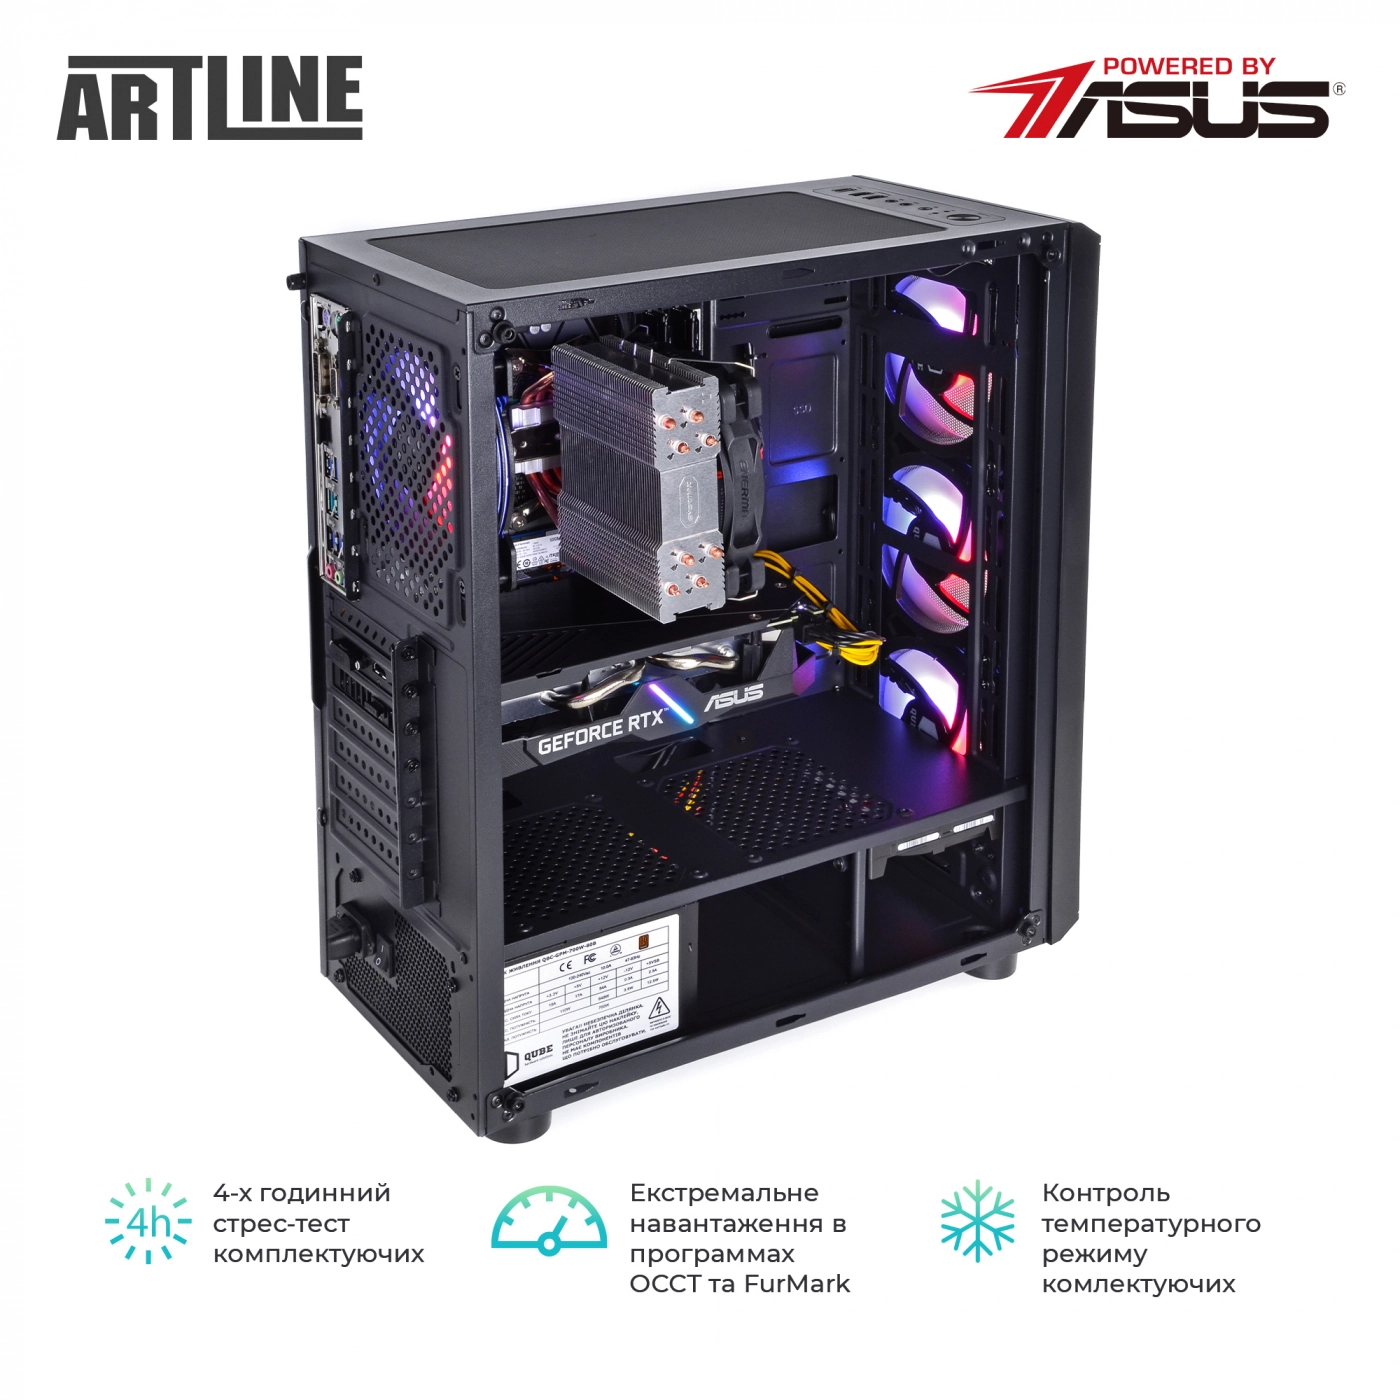 Купить Компьютер ARTLINE Gaming X81v14 - фото 9